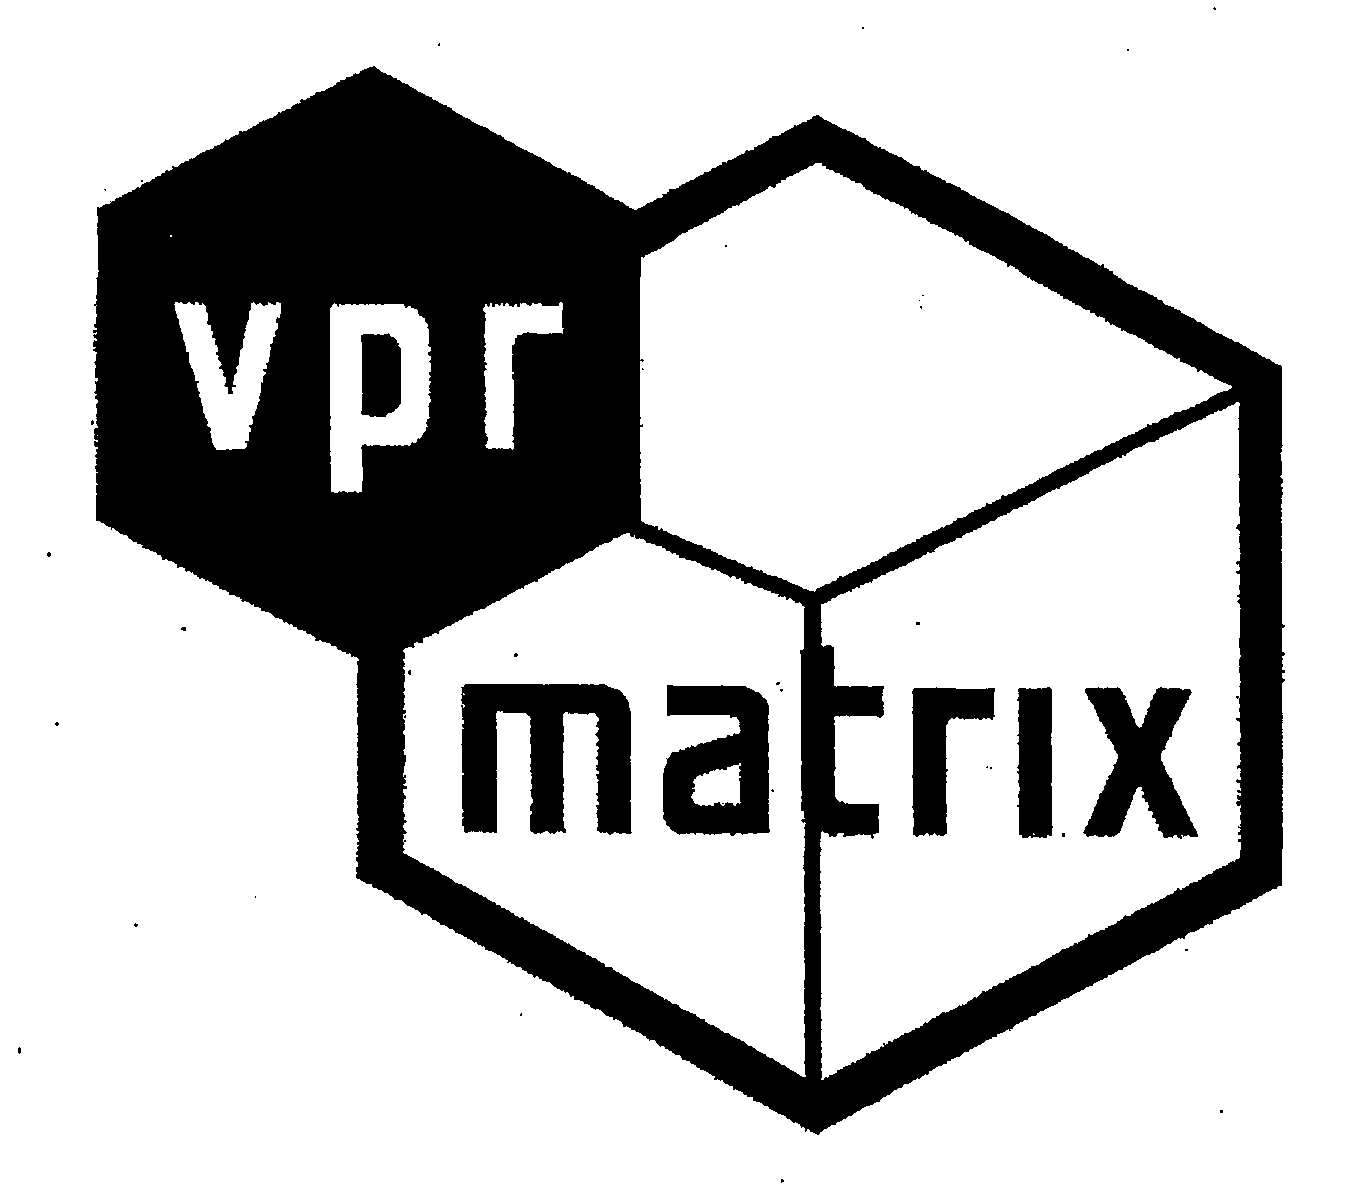 Trademark Logo VPR MATRIX